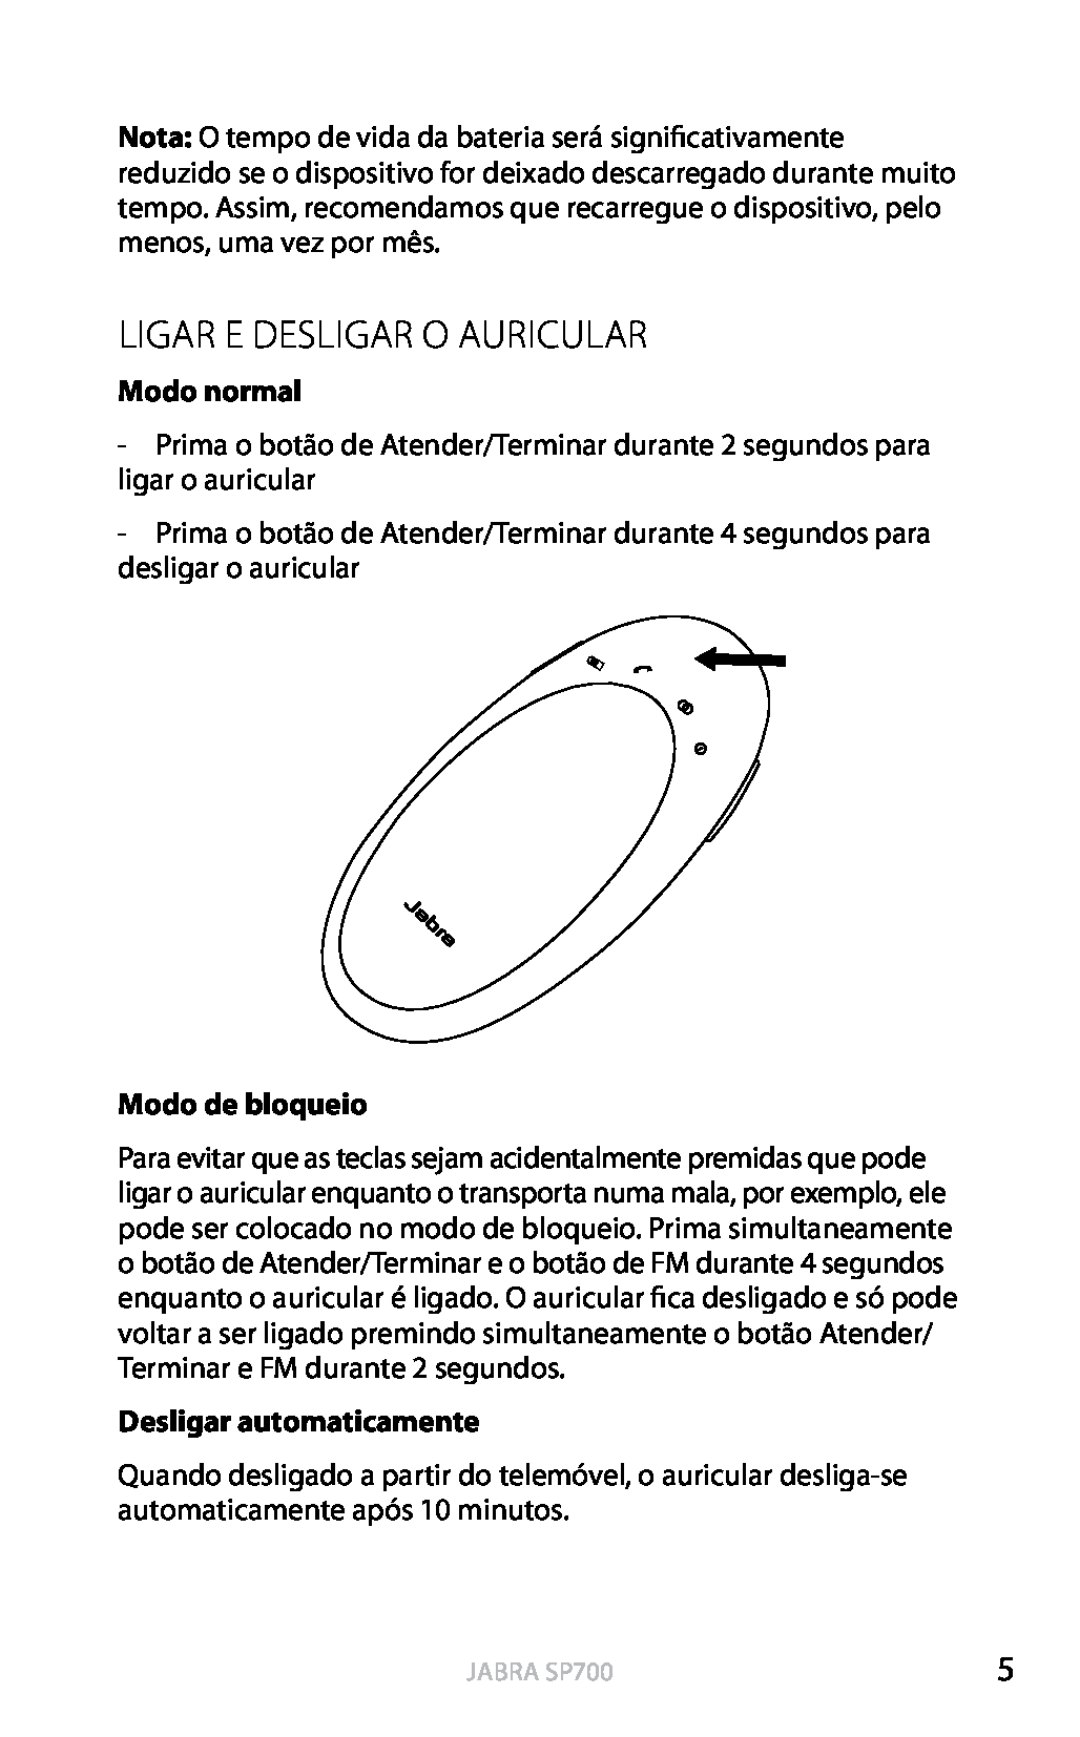 Jabra SP700 user manual Ligar E Desligar O Auricular, Modo de bloqueio, Desligar automaticamente, Português, Modo normal 